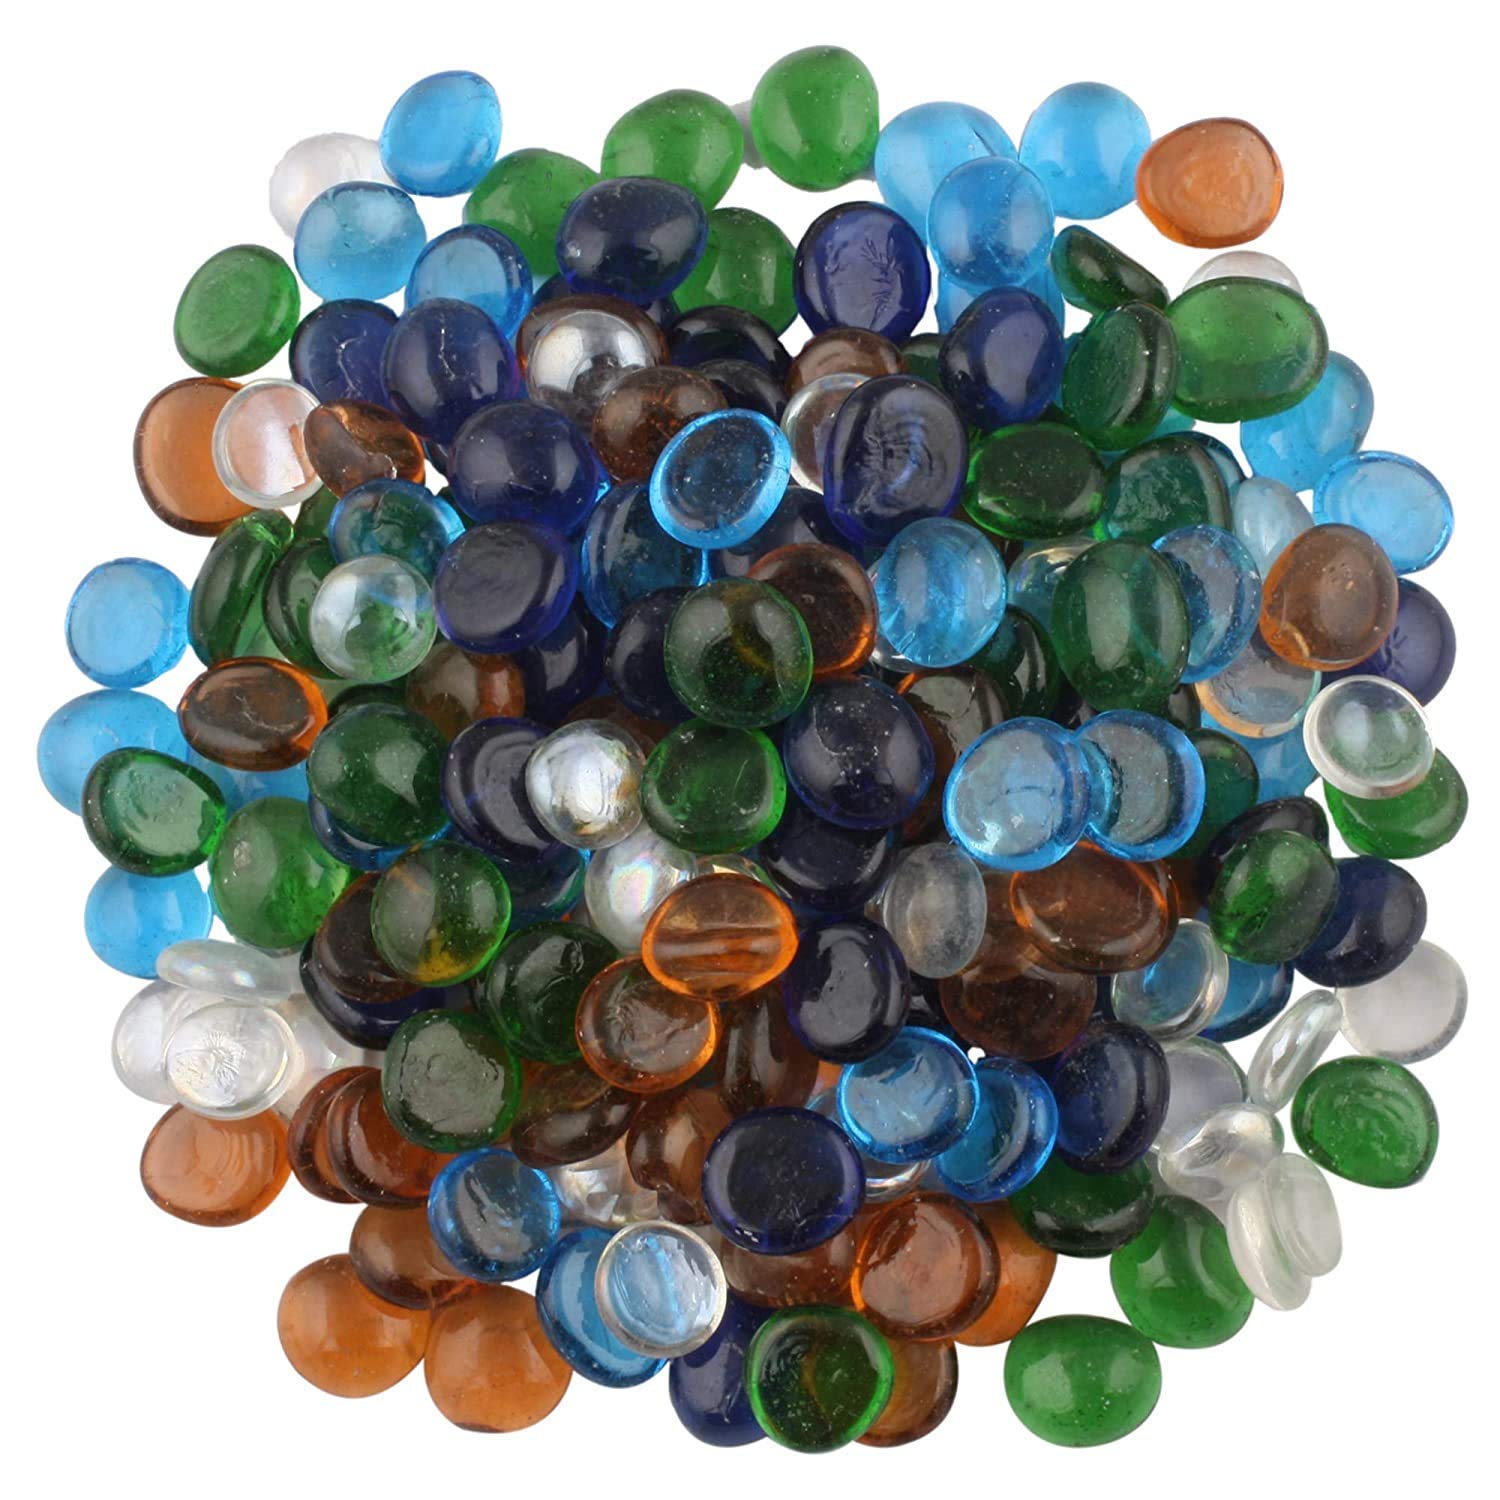 Color Stone Transparent Half Round Aquarium Glass Pebbles - Buy ...